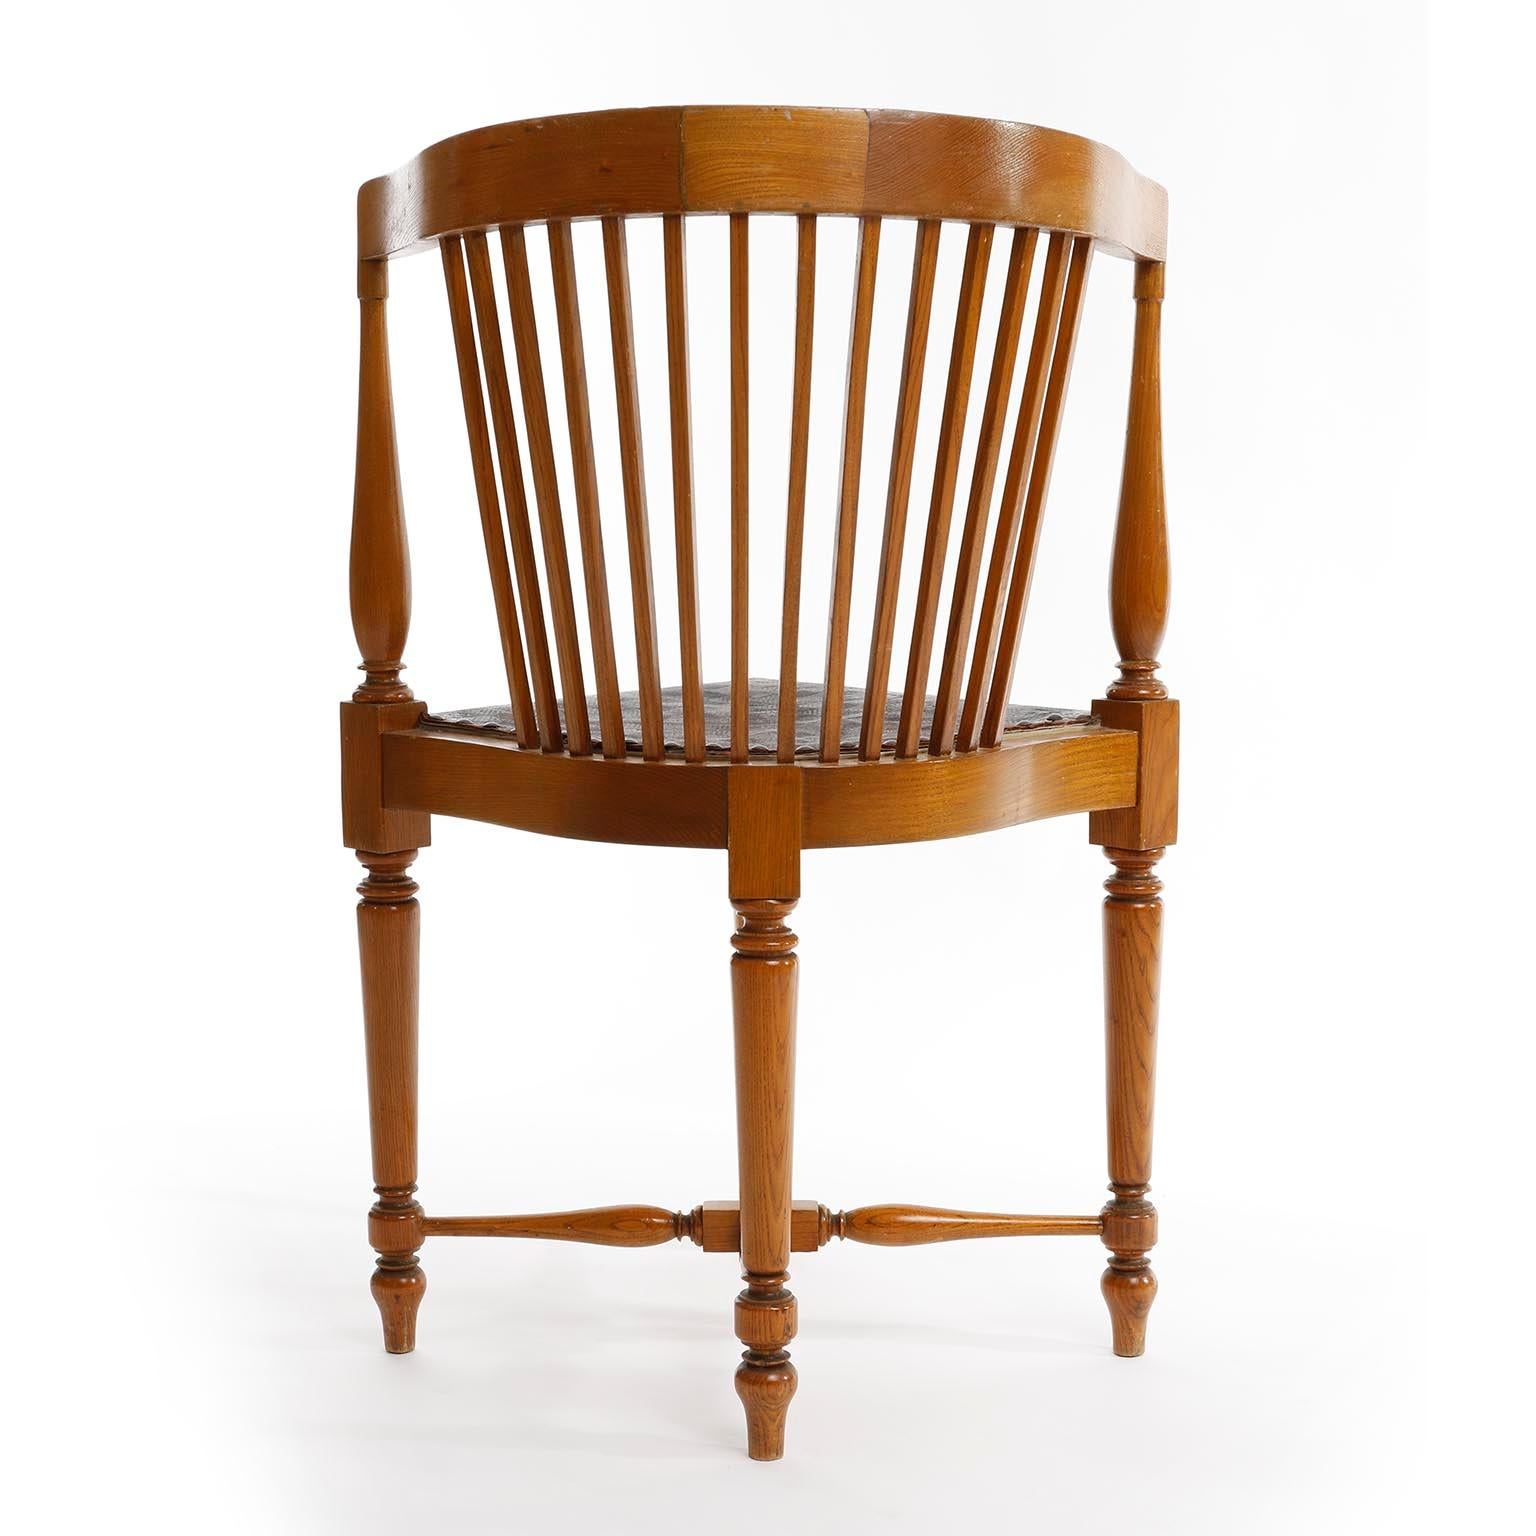 Adolf Loos Corner Chair, F.O. Schmidt, Oak Wood Leather, Jugendstil, 1898-1900 For Sale 1